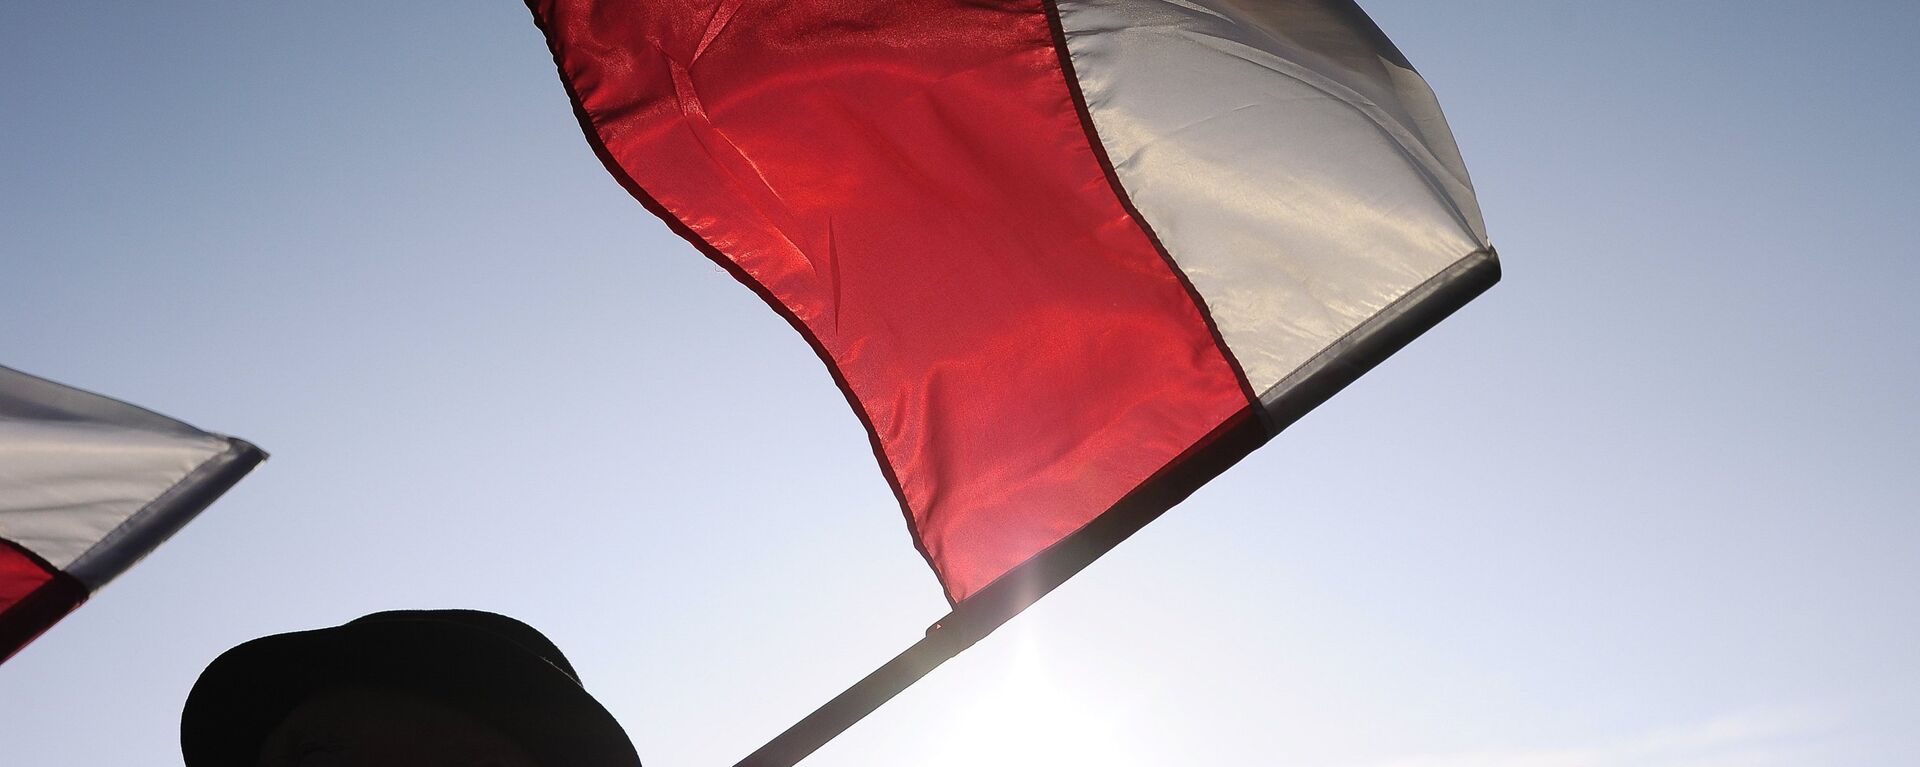 Флаг Польши - Sputnik Латвия, 1920, 27.09.2019